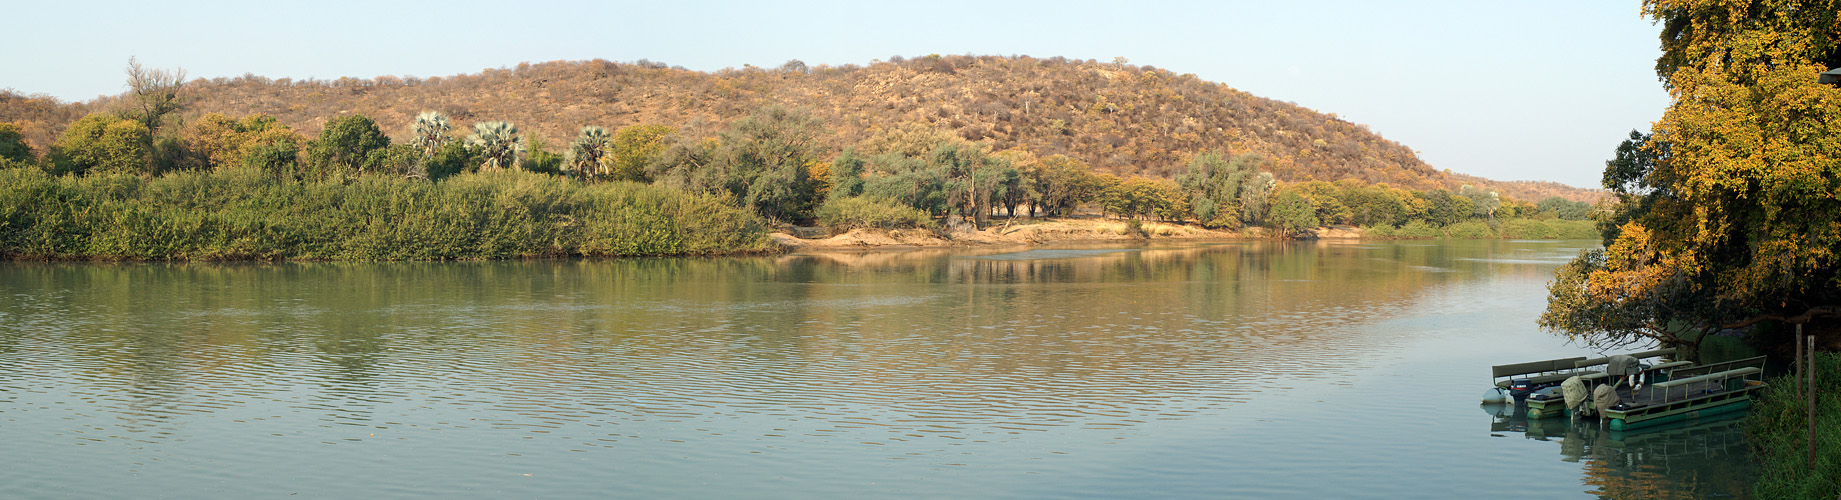 Photo panoramique de la rivière Kunene